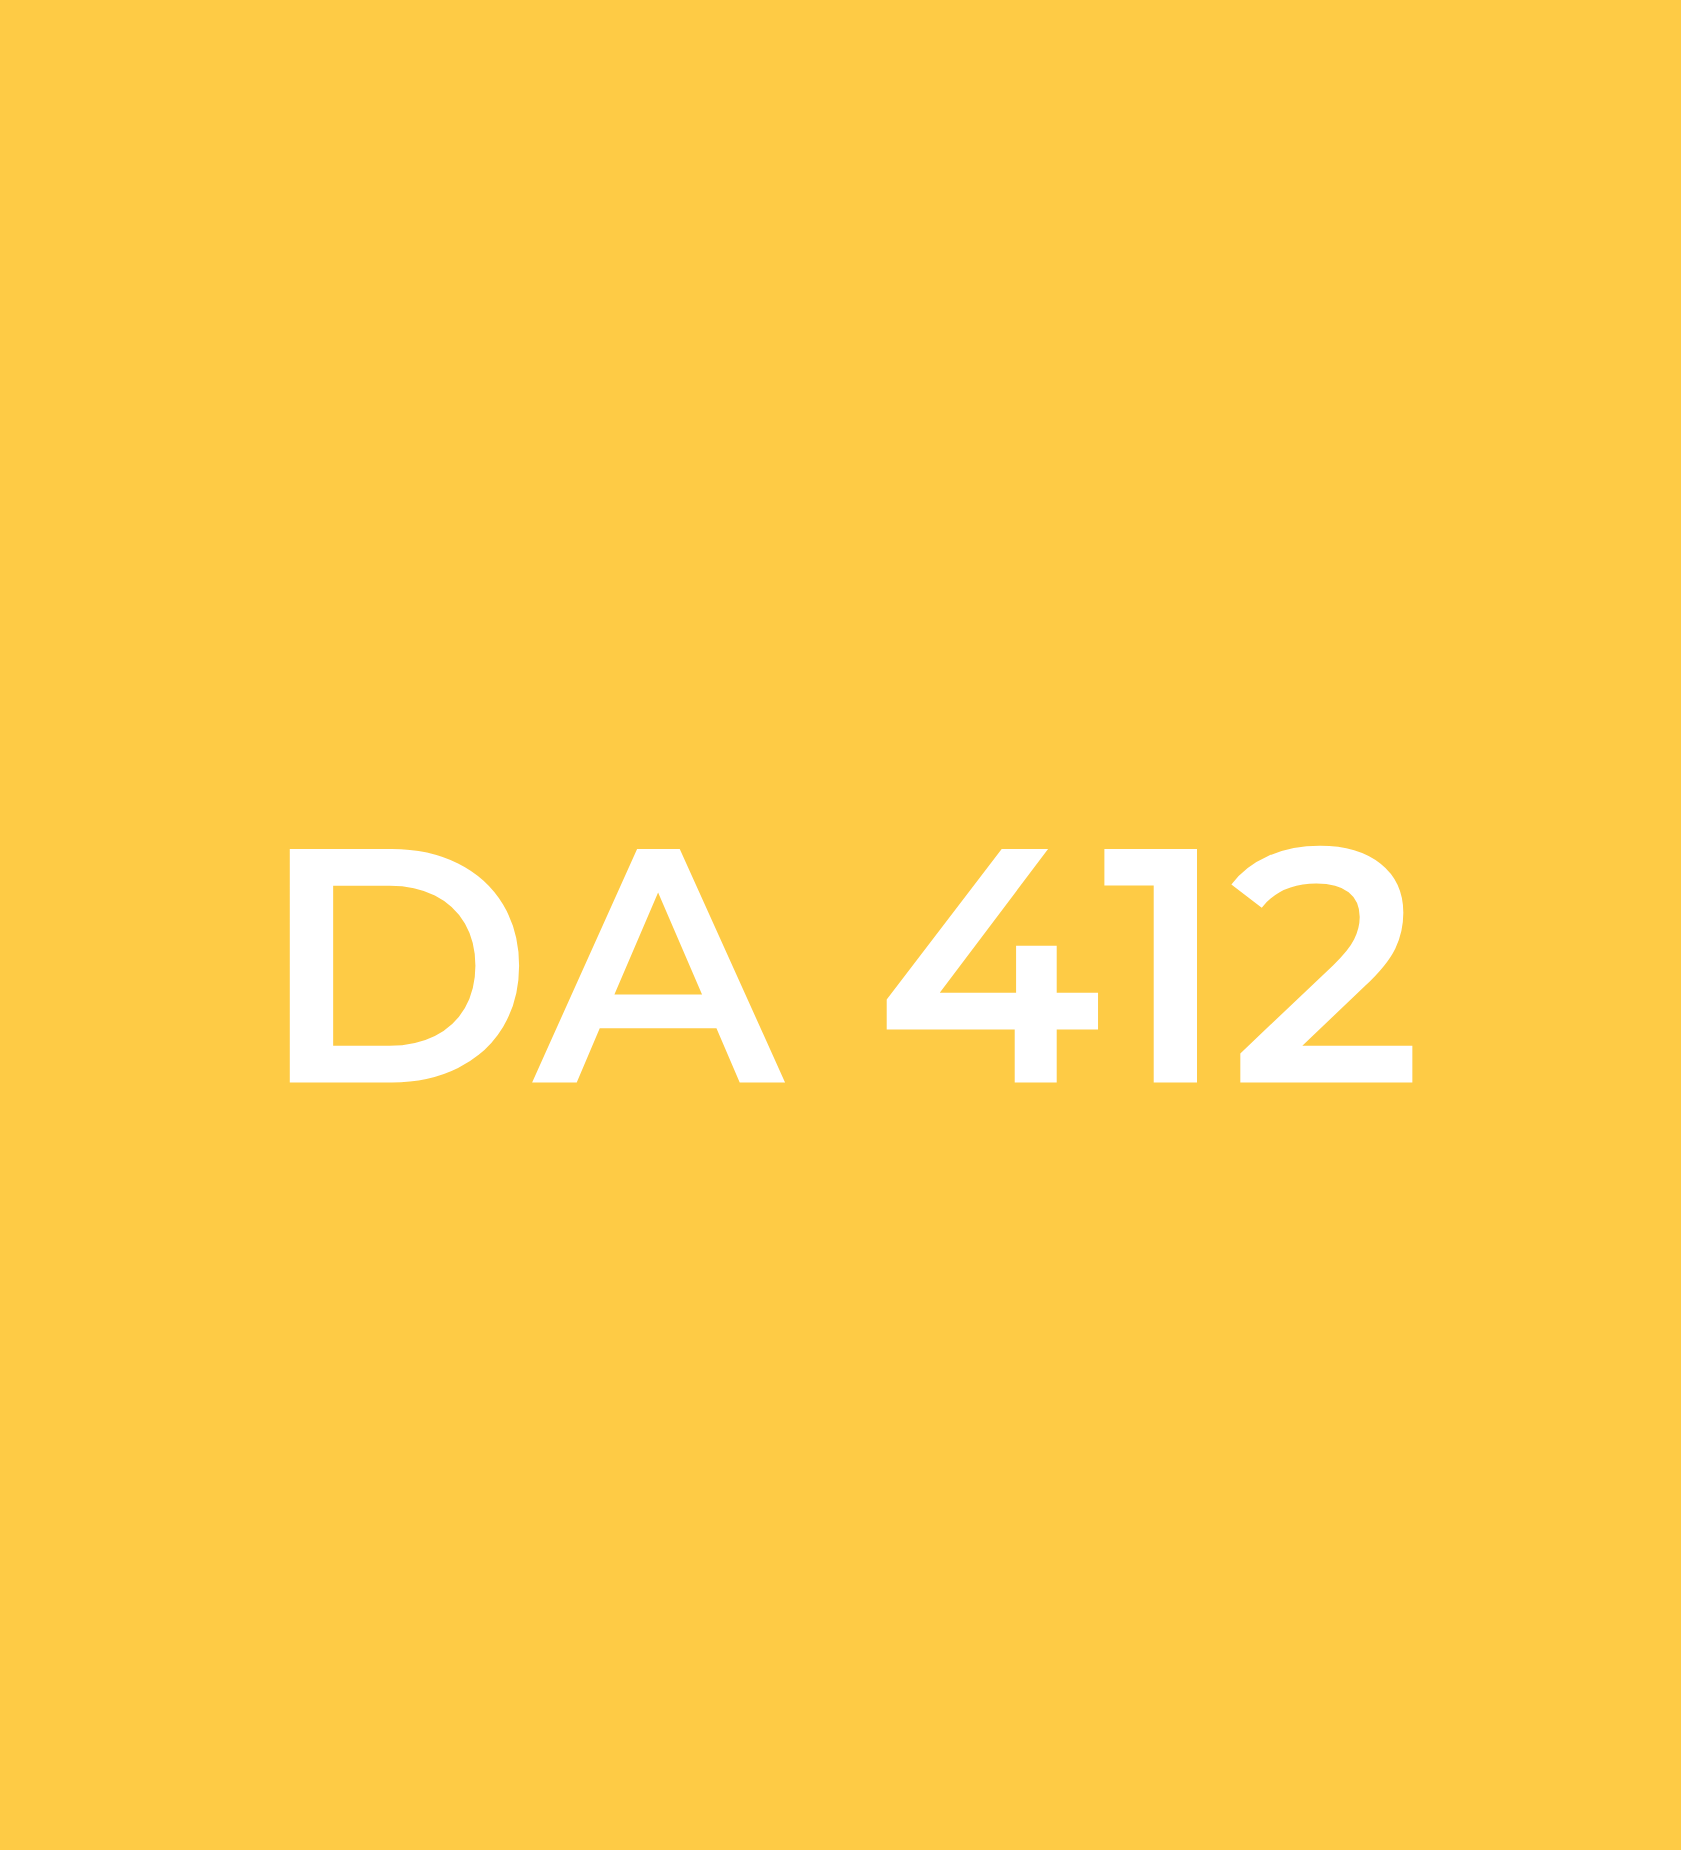 DA 412